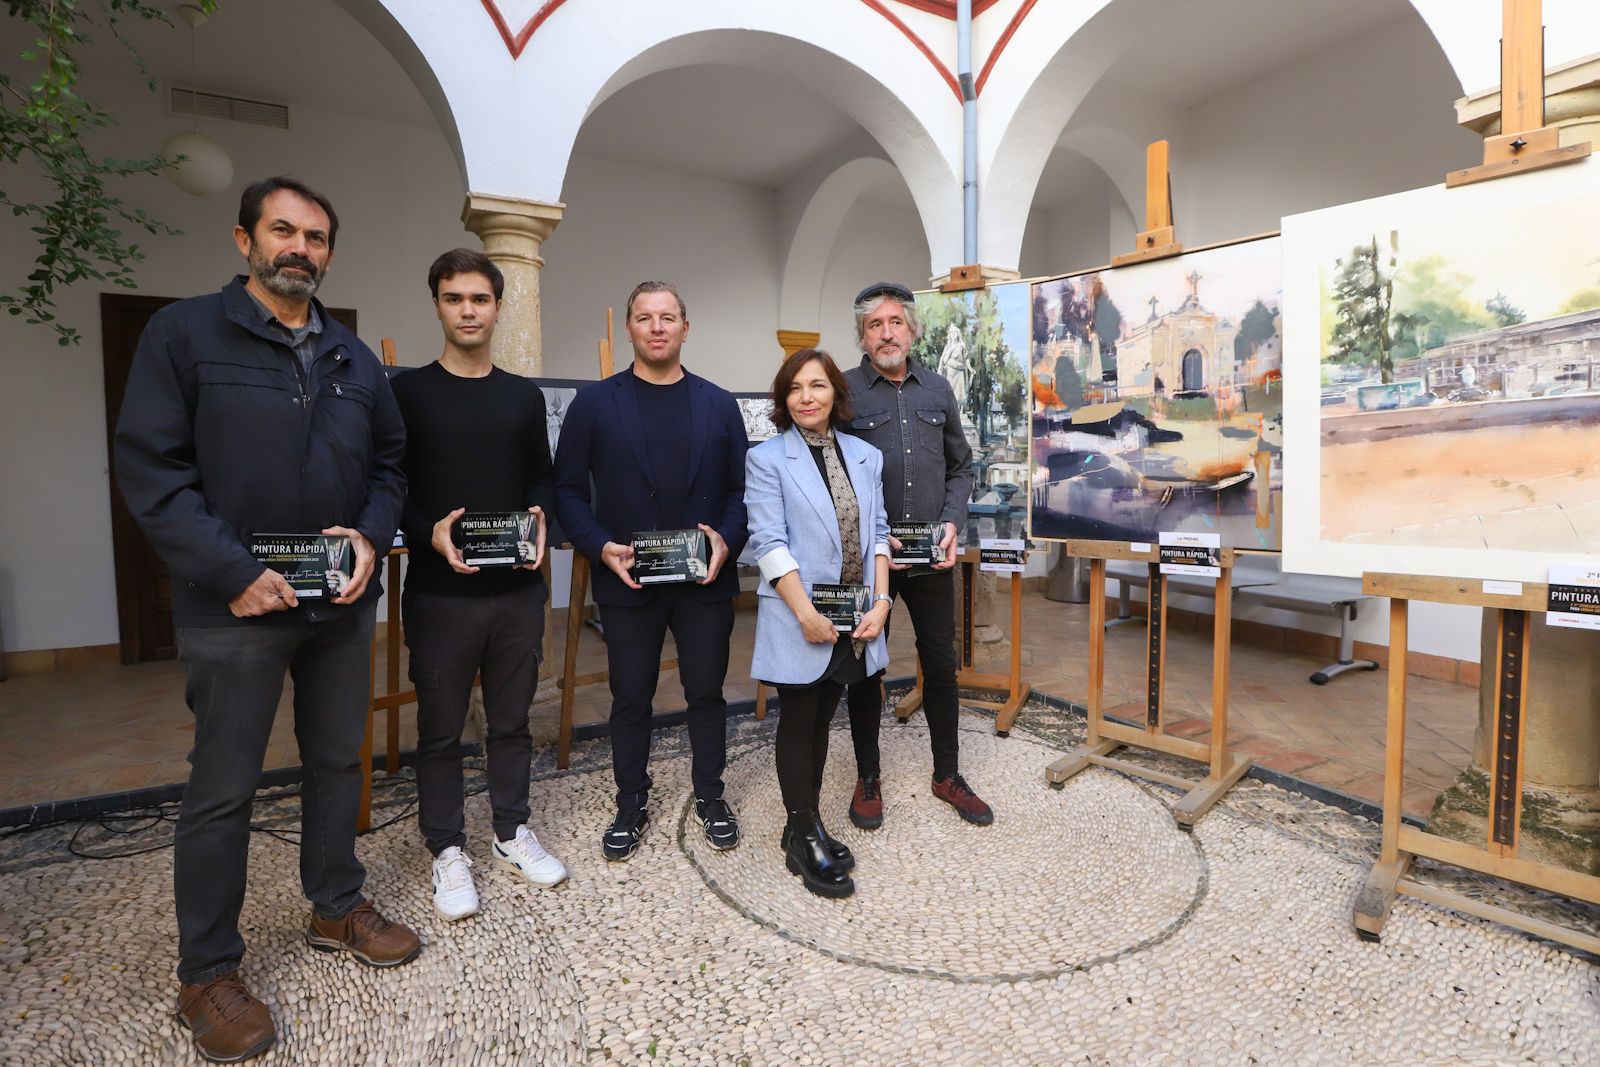 CÓRDOBA y Cecosam entregan unos premios "aliciente" para la pintura rápida y los 'urban sketchers'